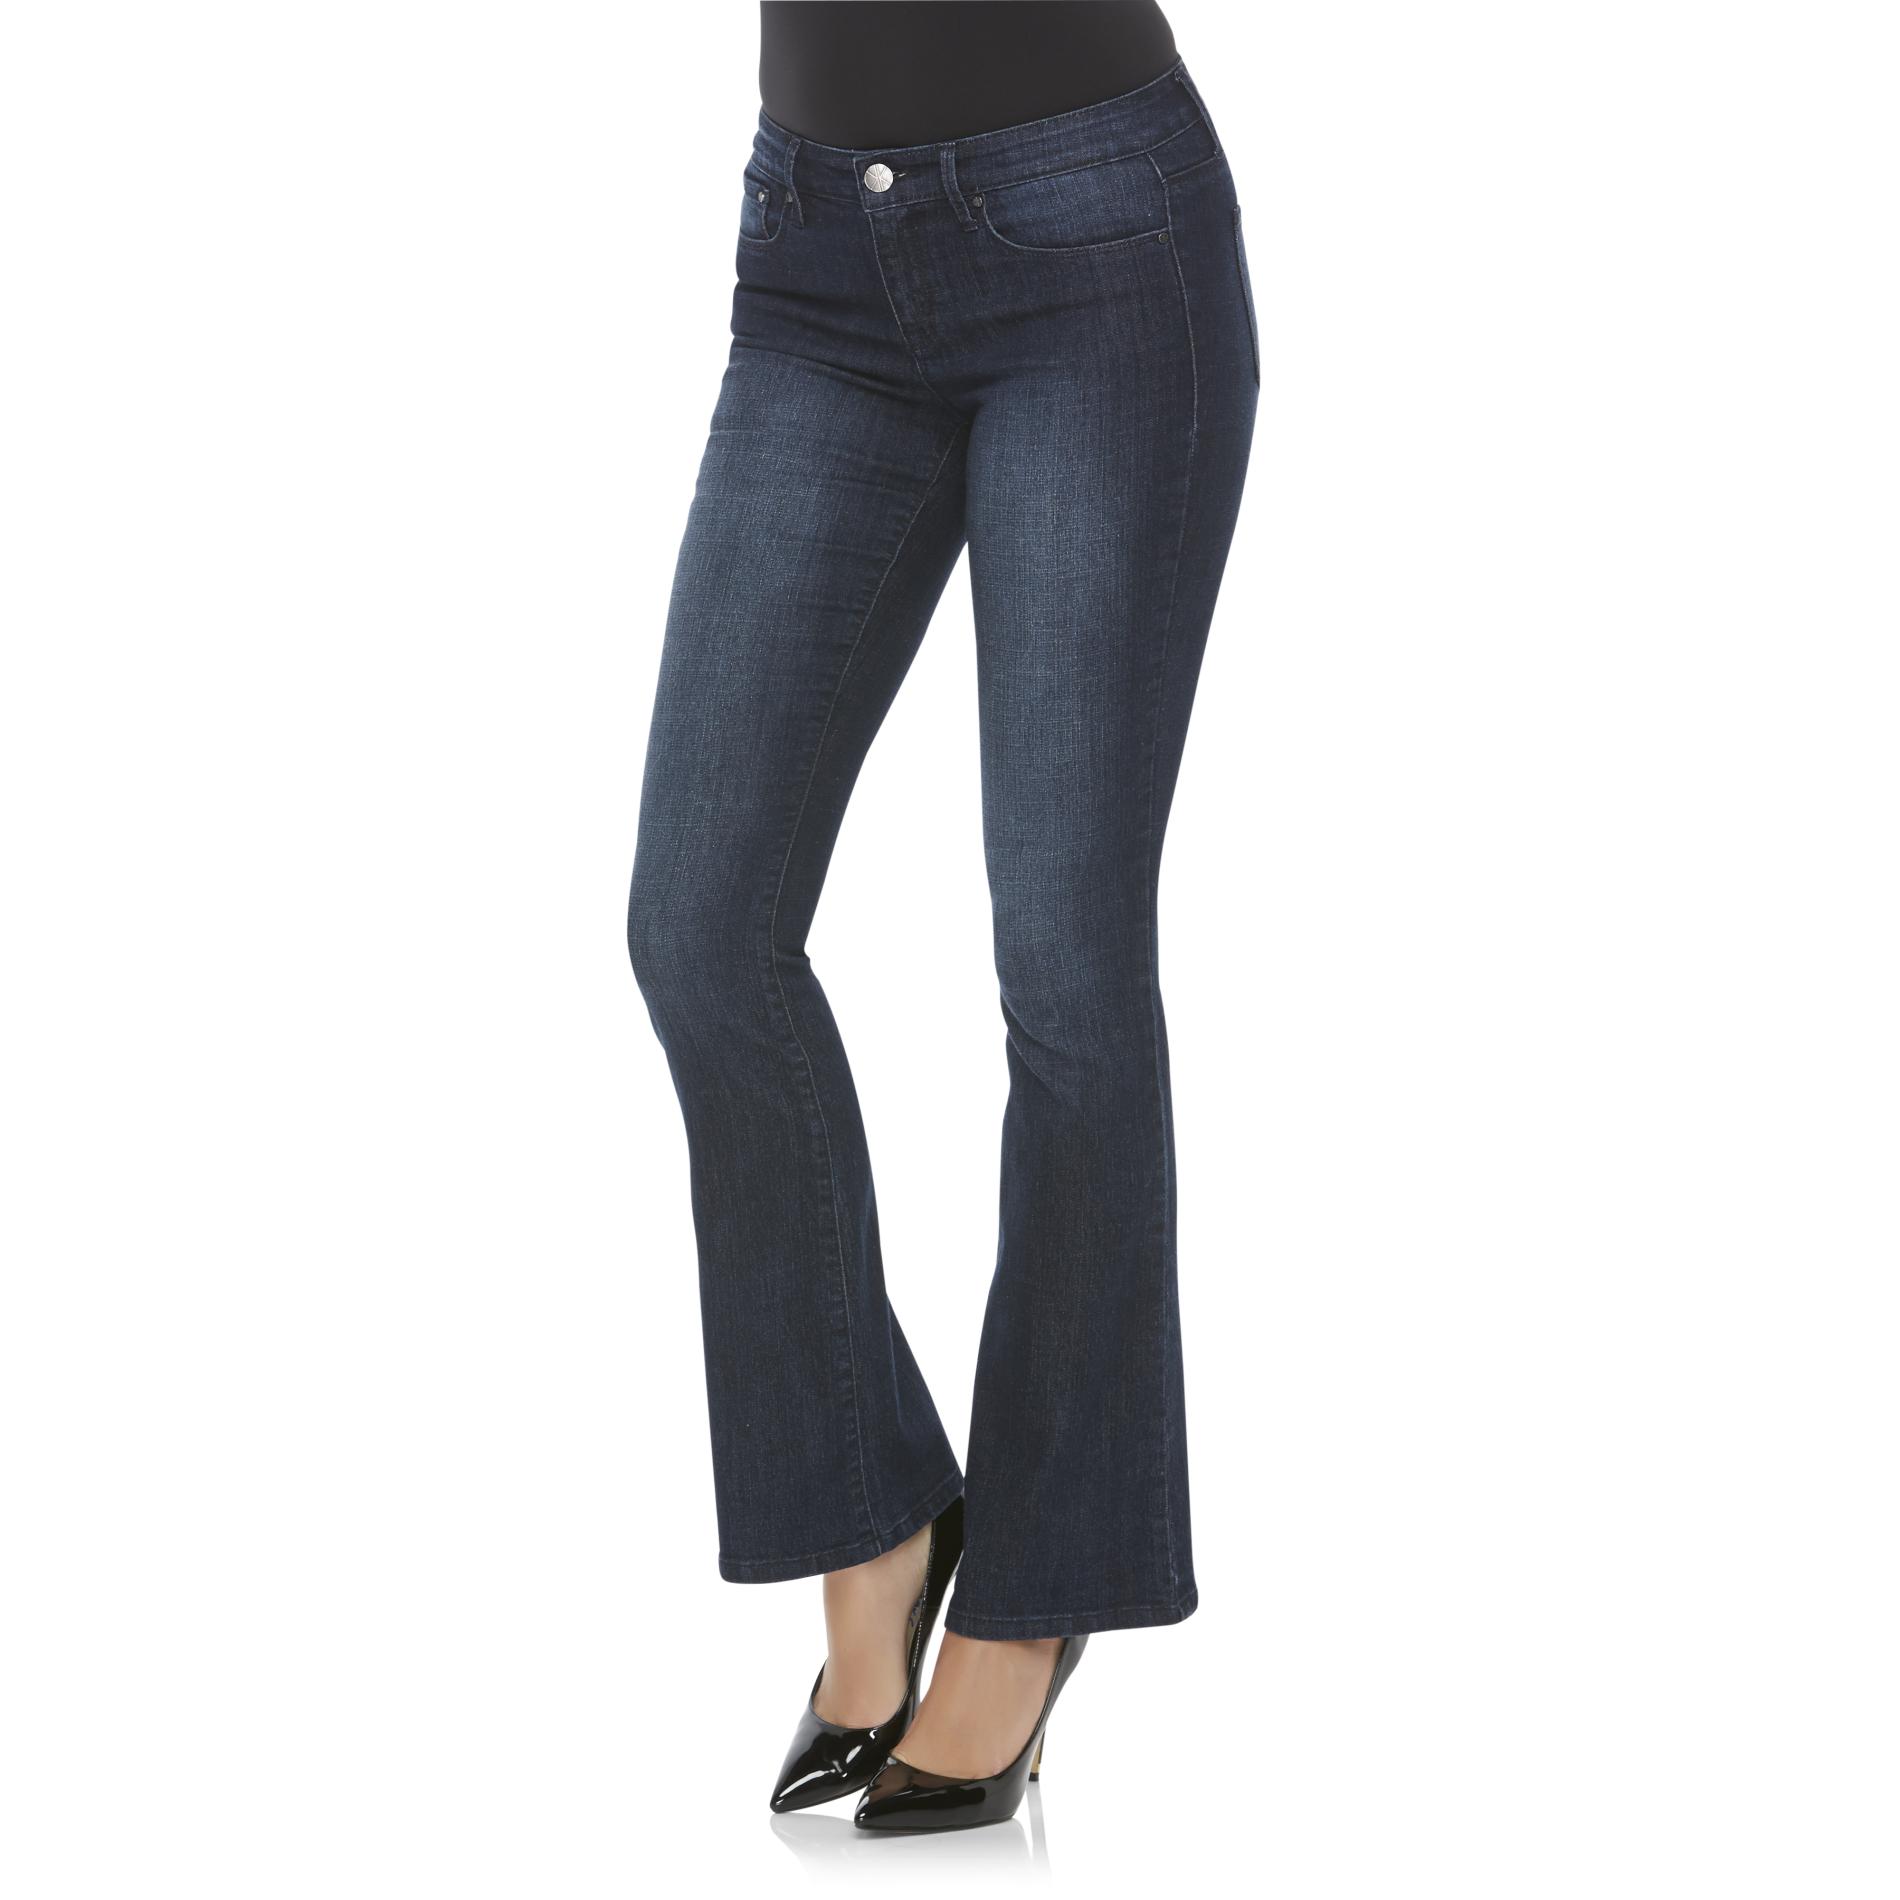 Kardashian Kollection Women's Khloe Curvy Jeans - Slim Bootcut